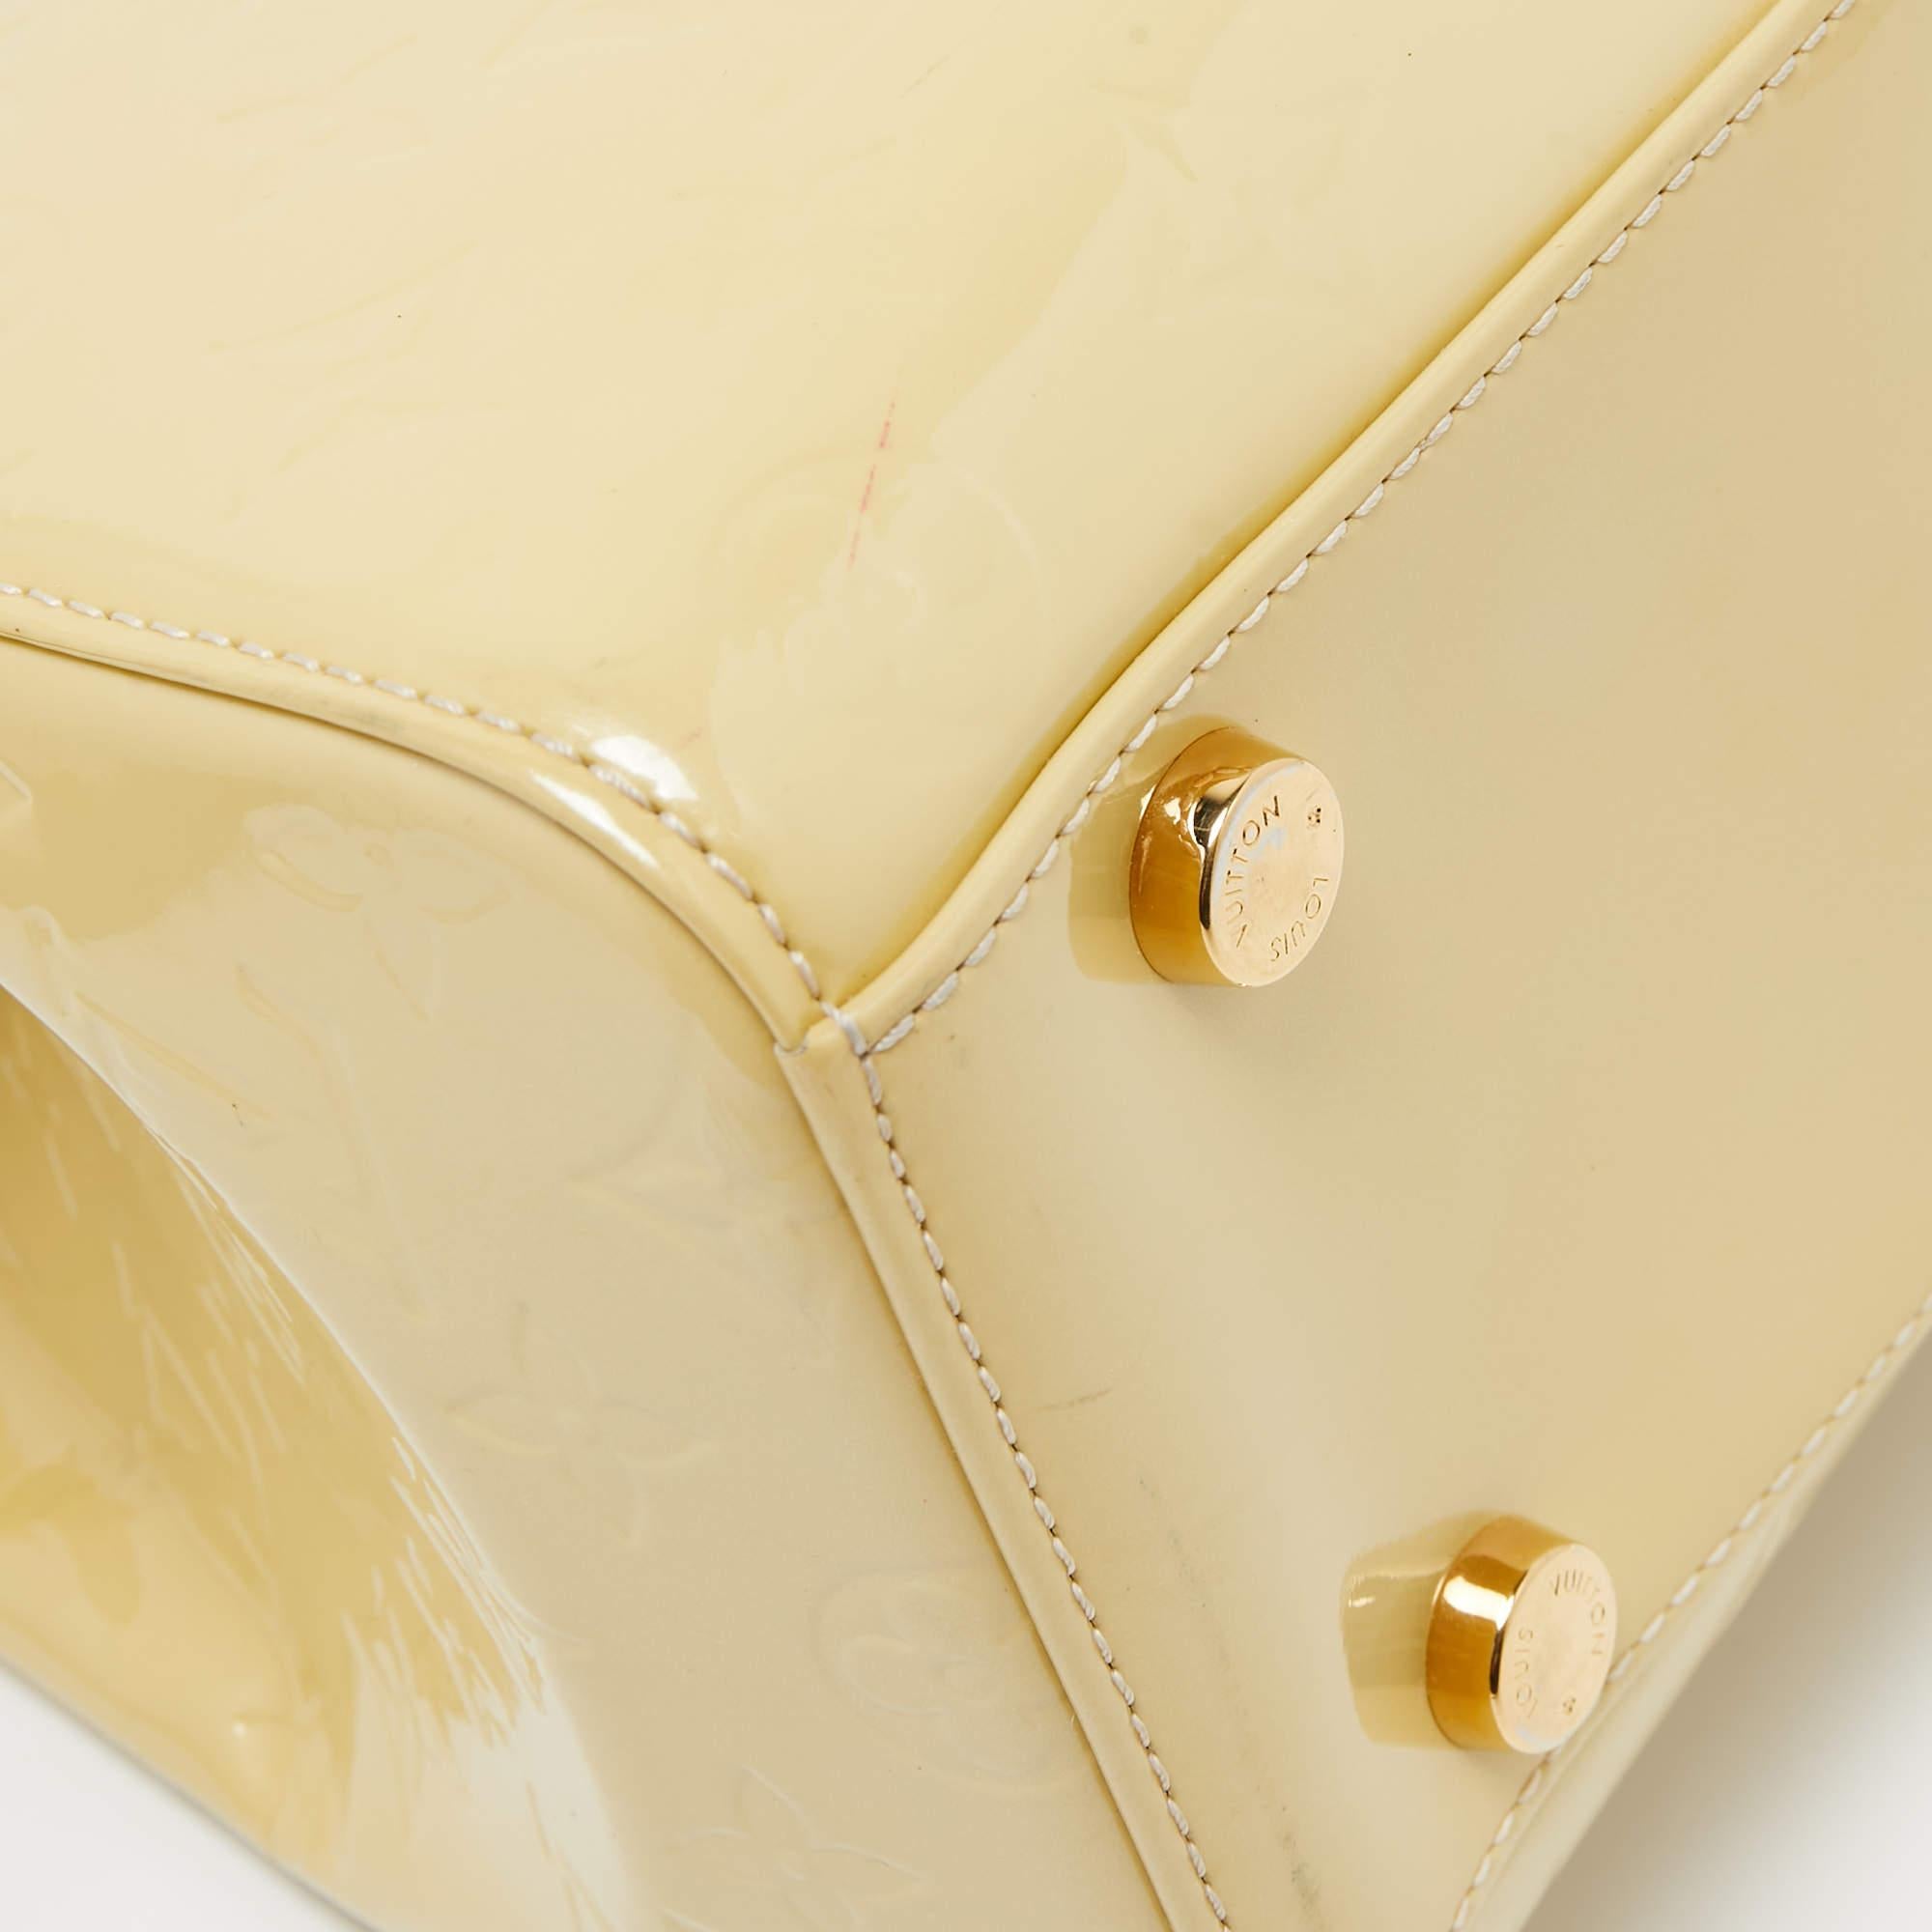 Louis Vuitton Blanc Corail Monogram Vernis Brea GM Bag For Sale 3